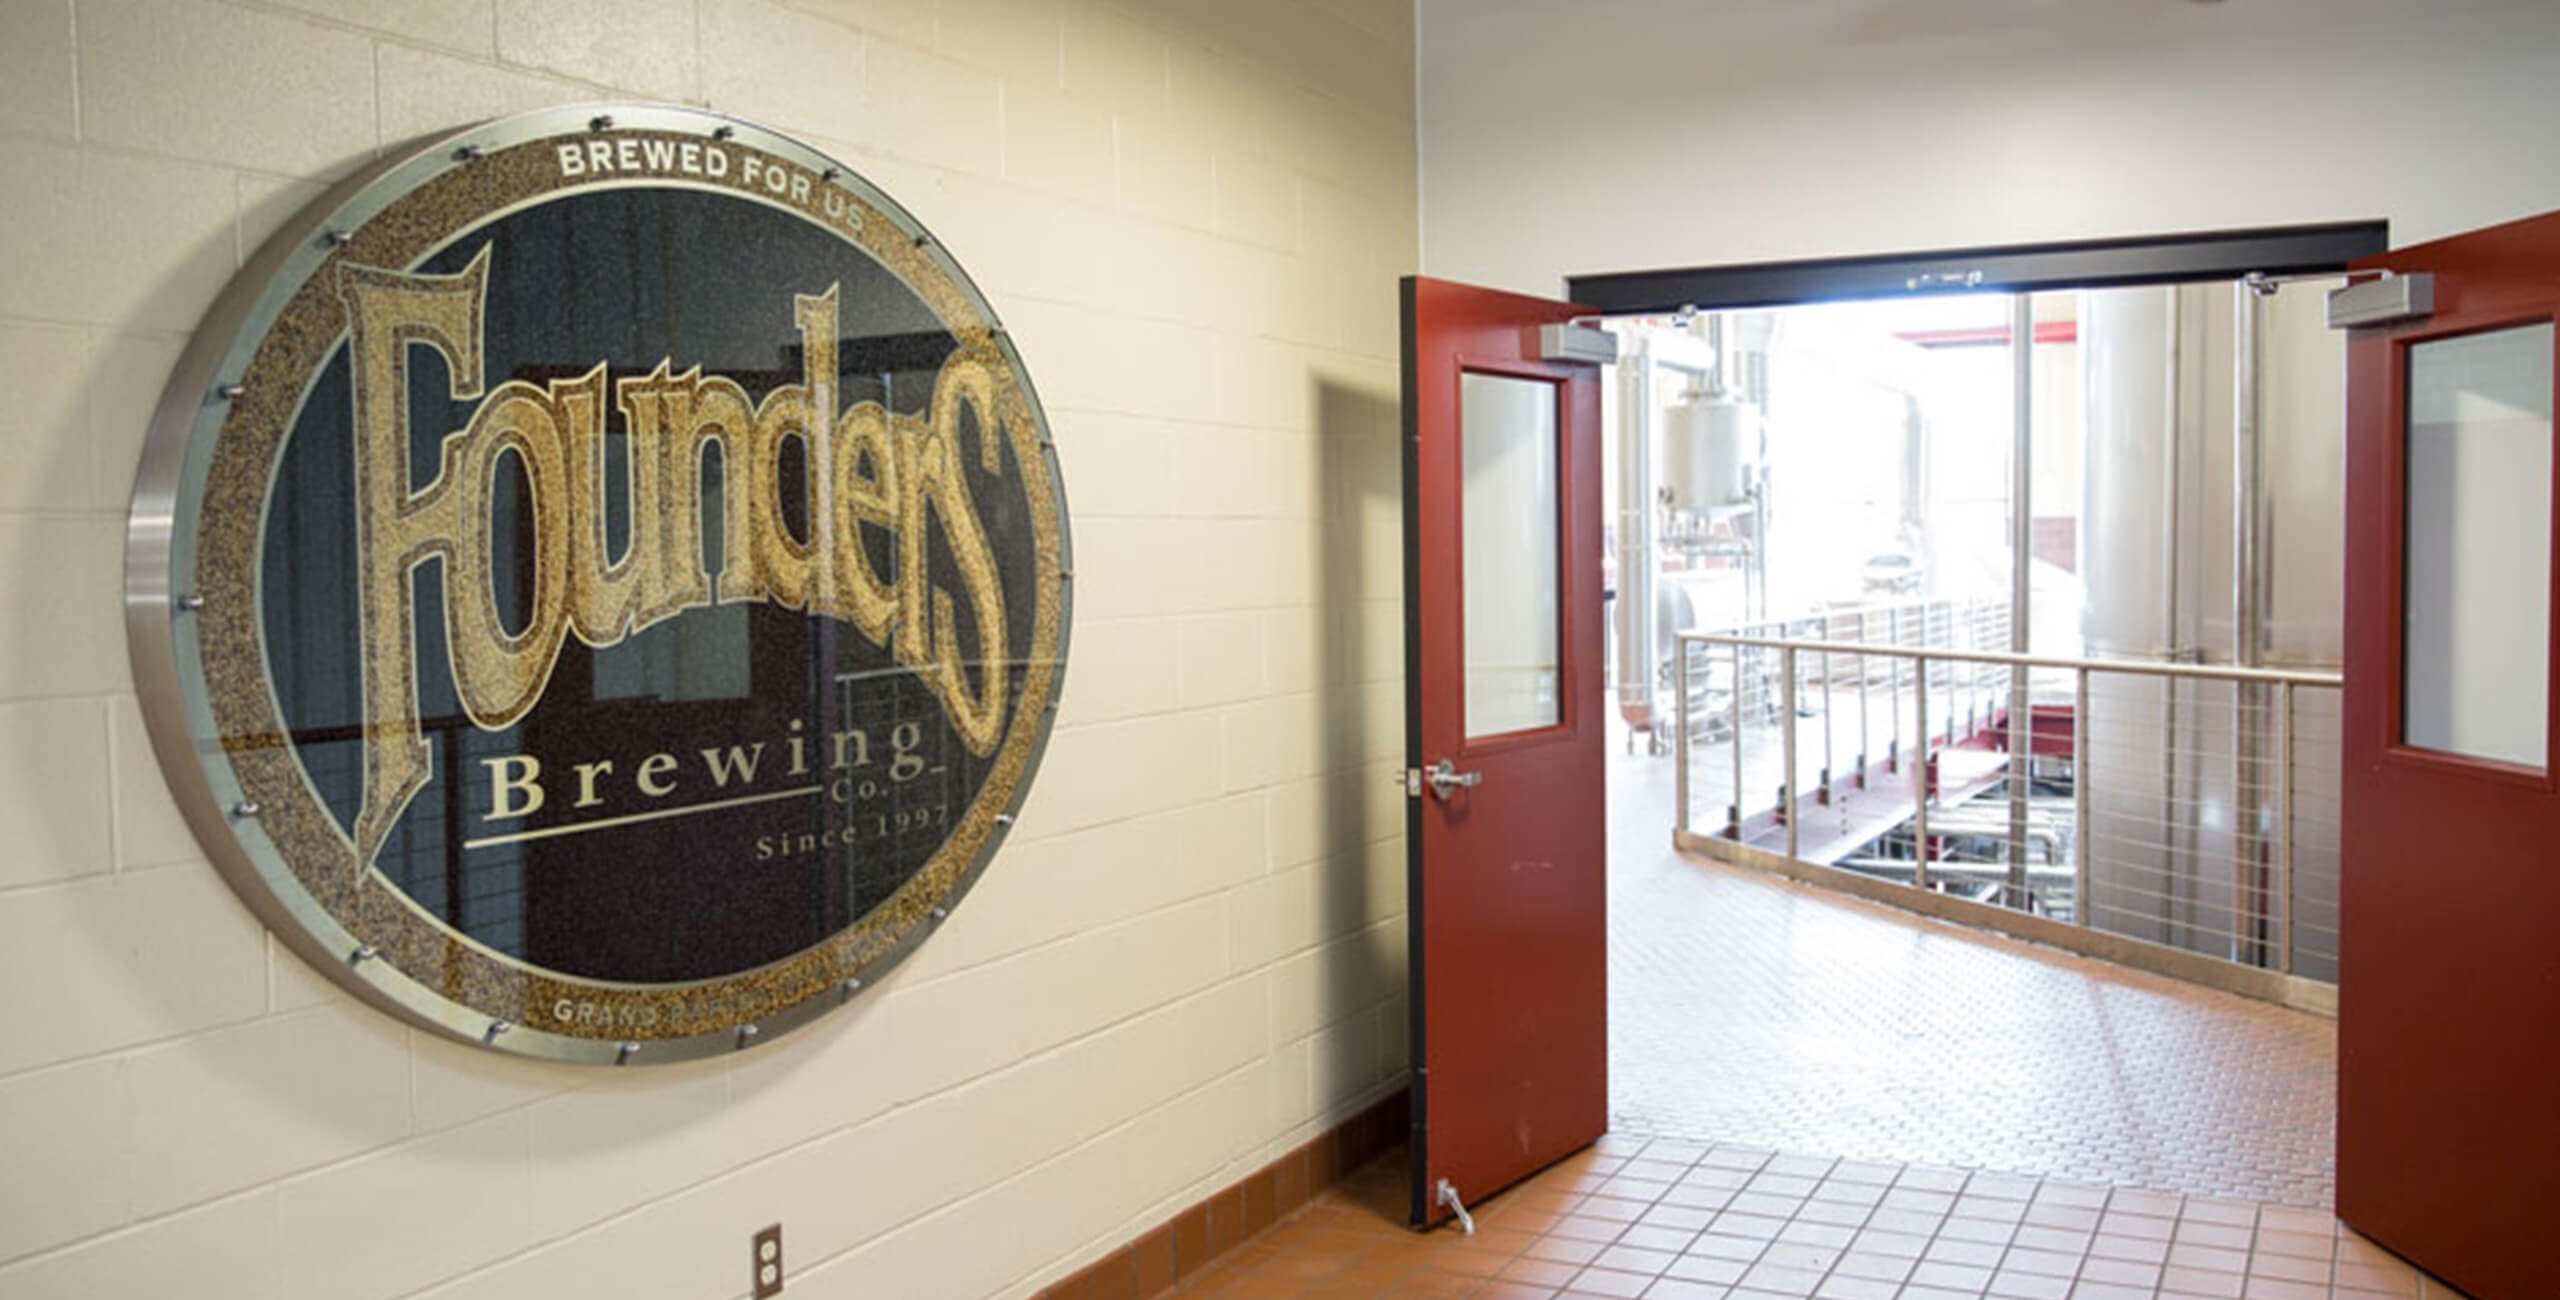 Hallway inside brewing facility